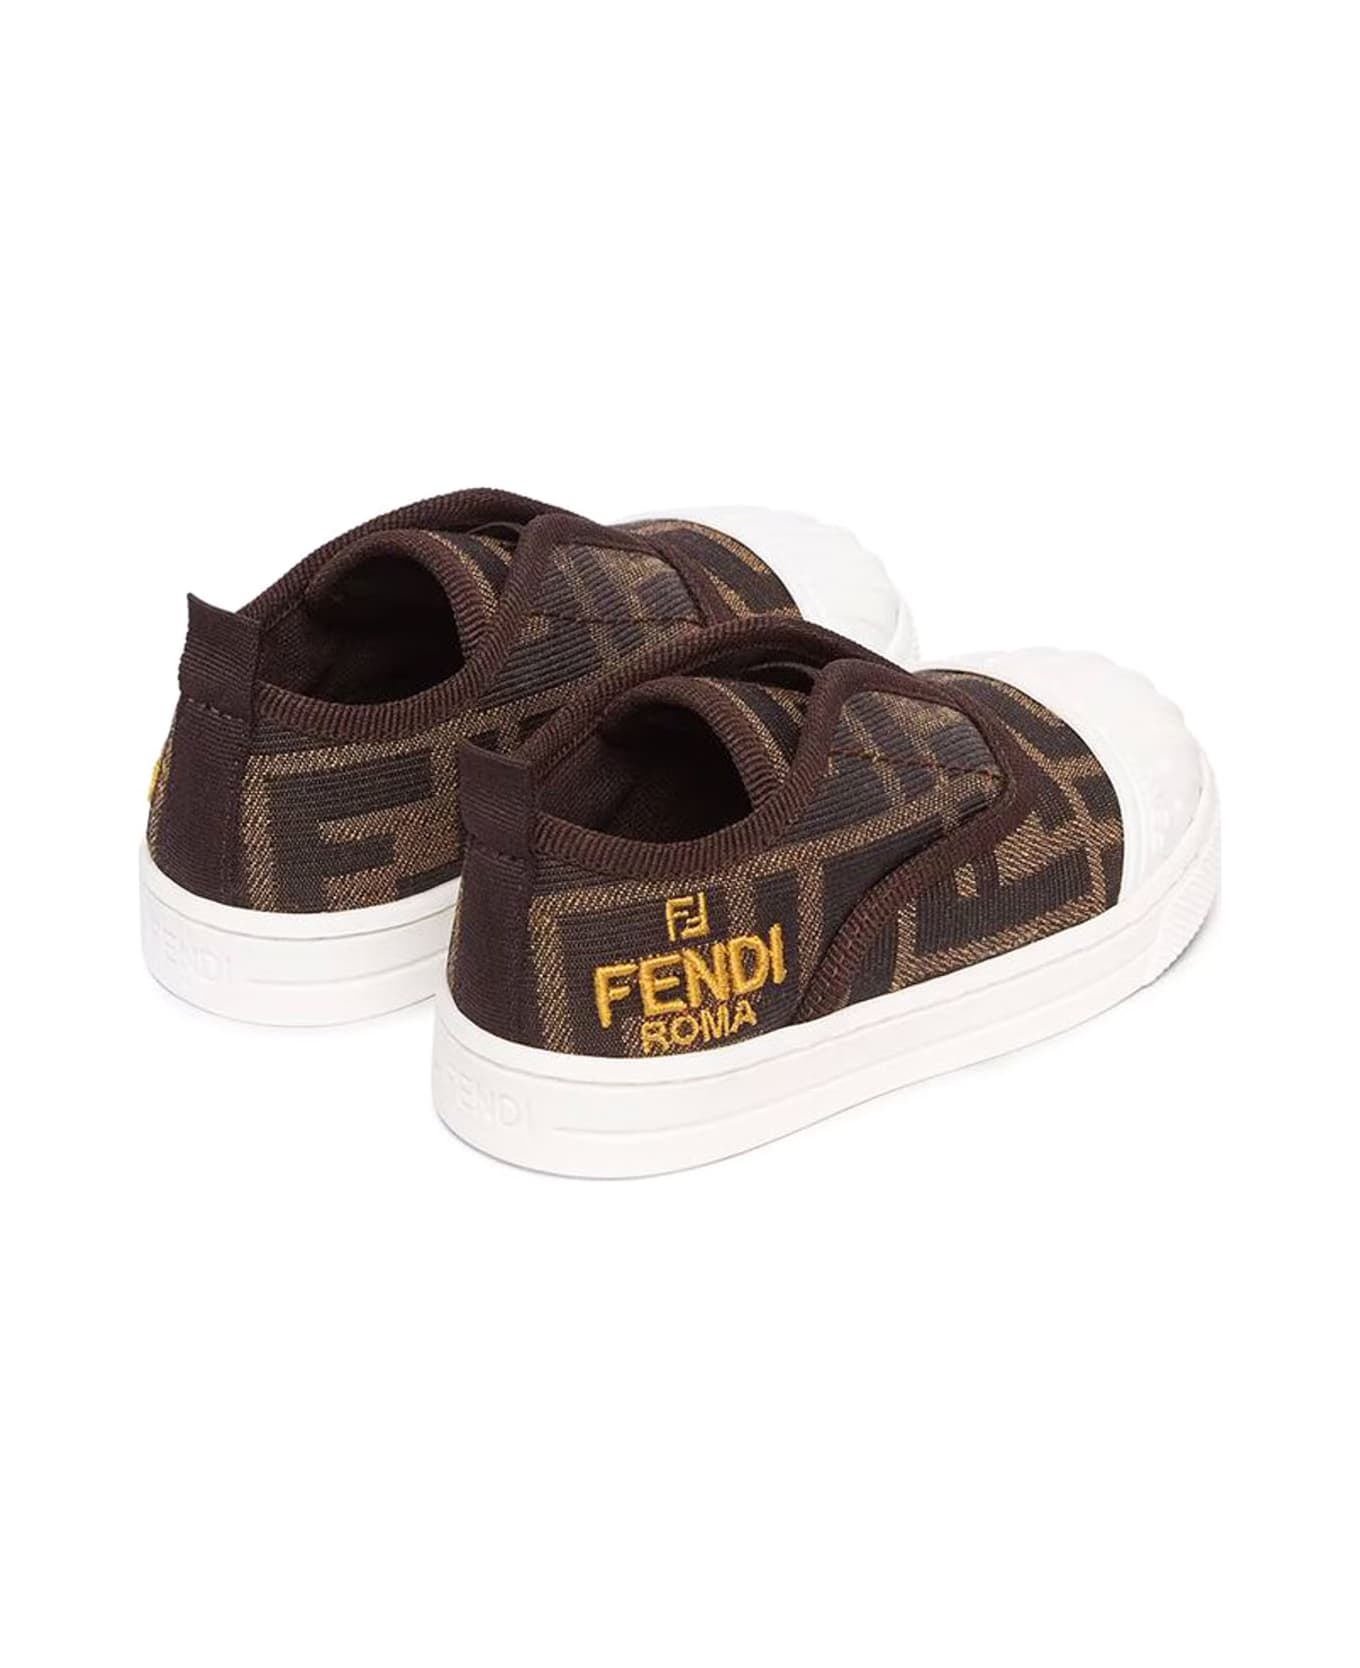 Fendi Kids Sneakers Brown - Brown シューズ